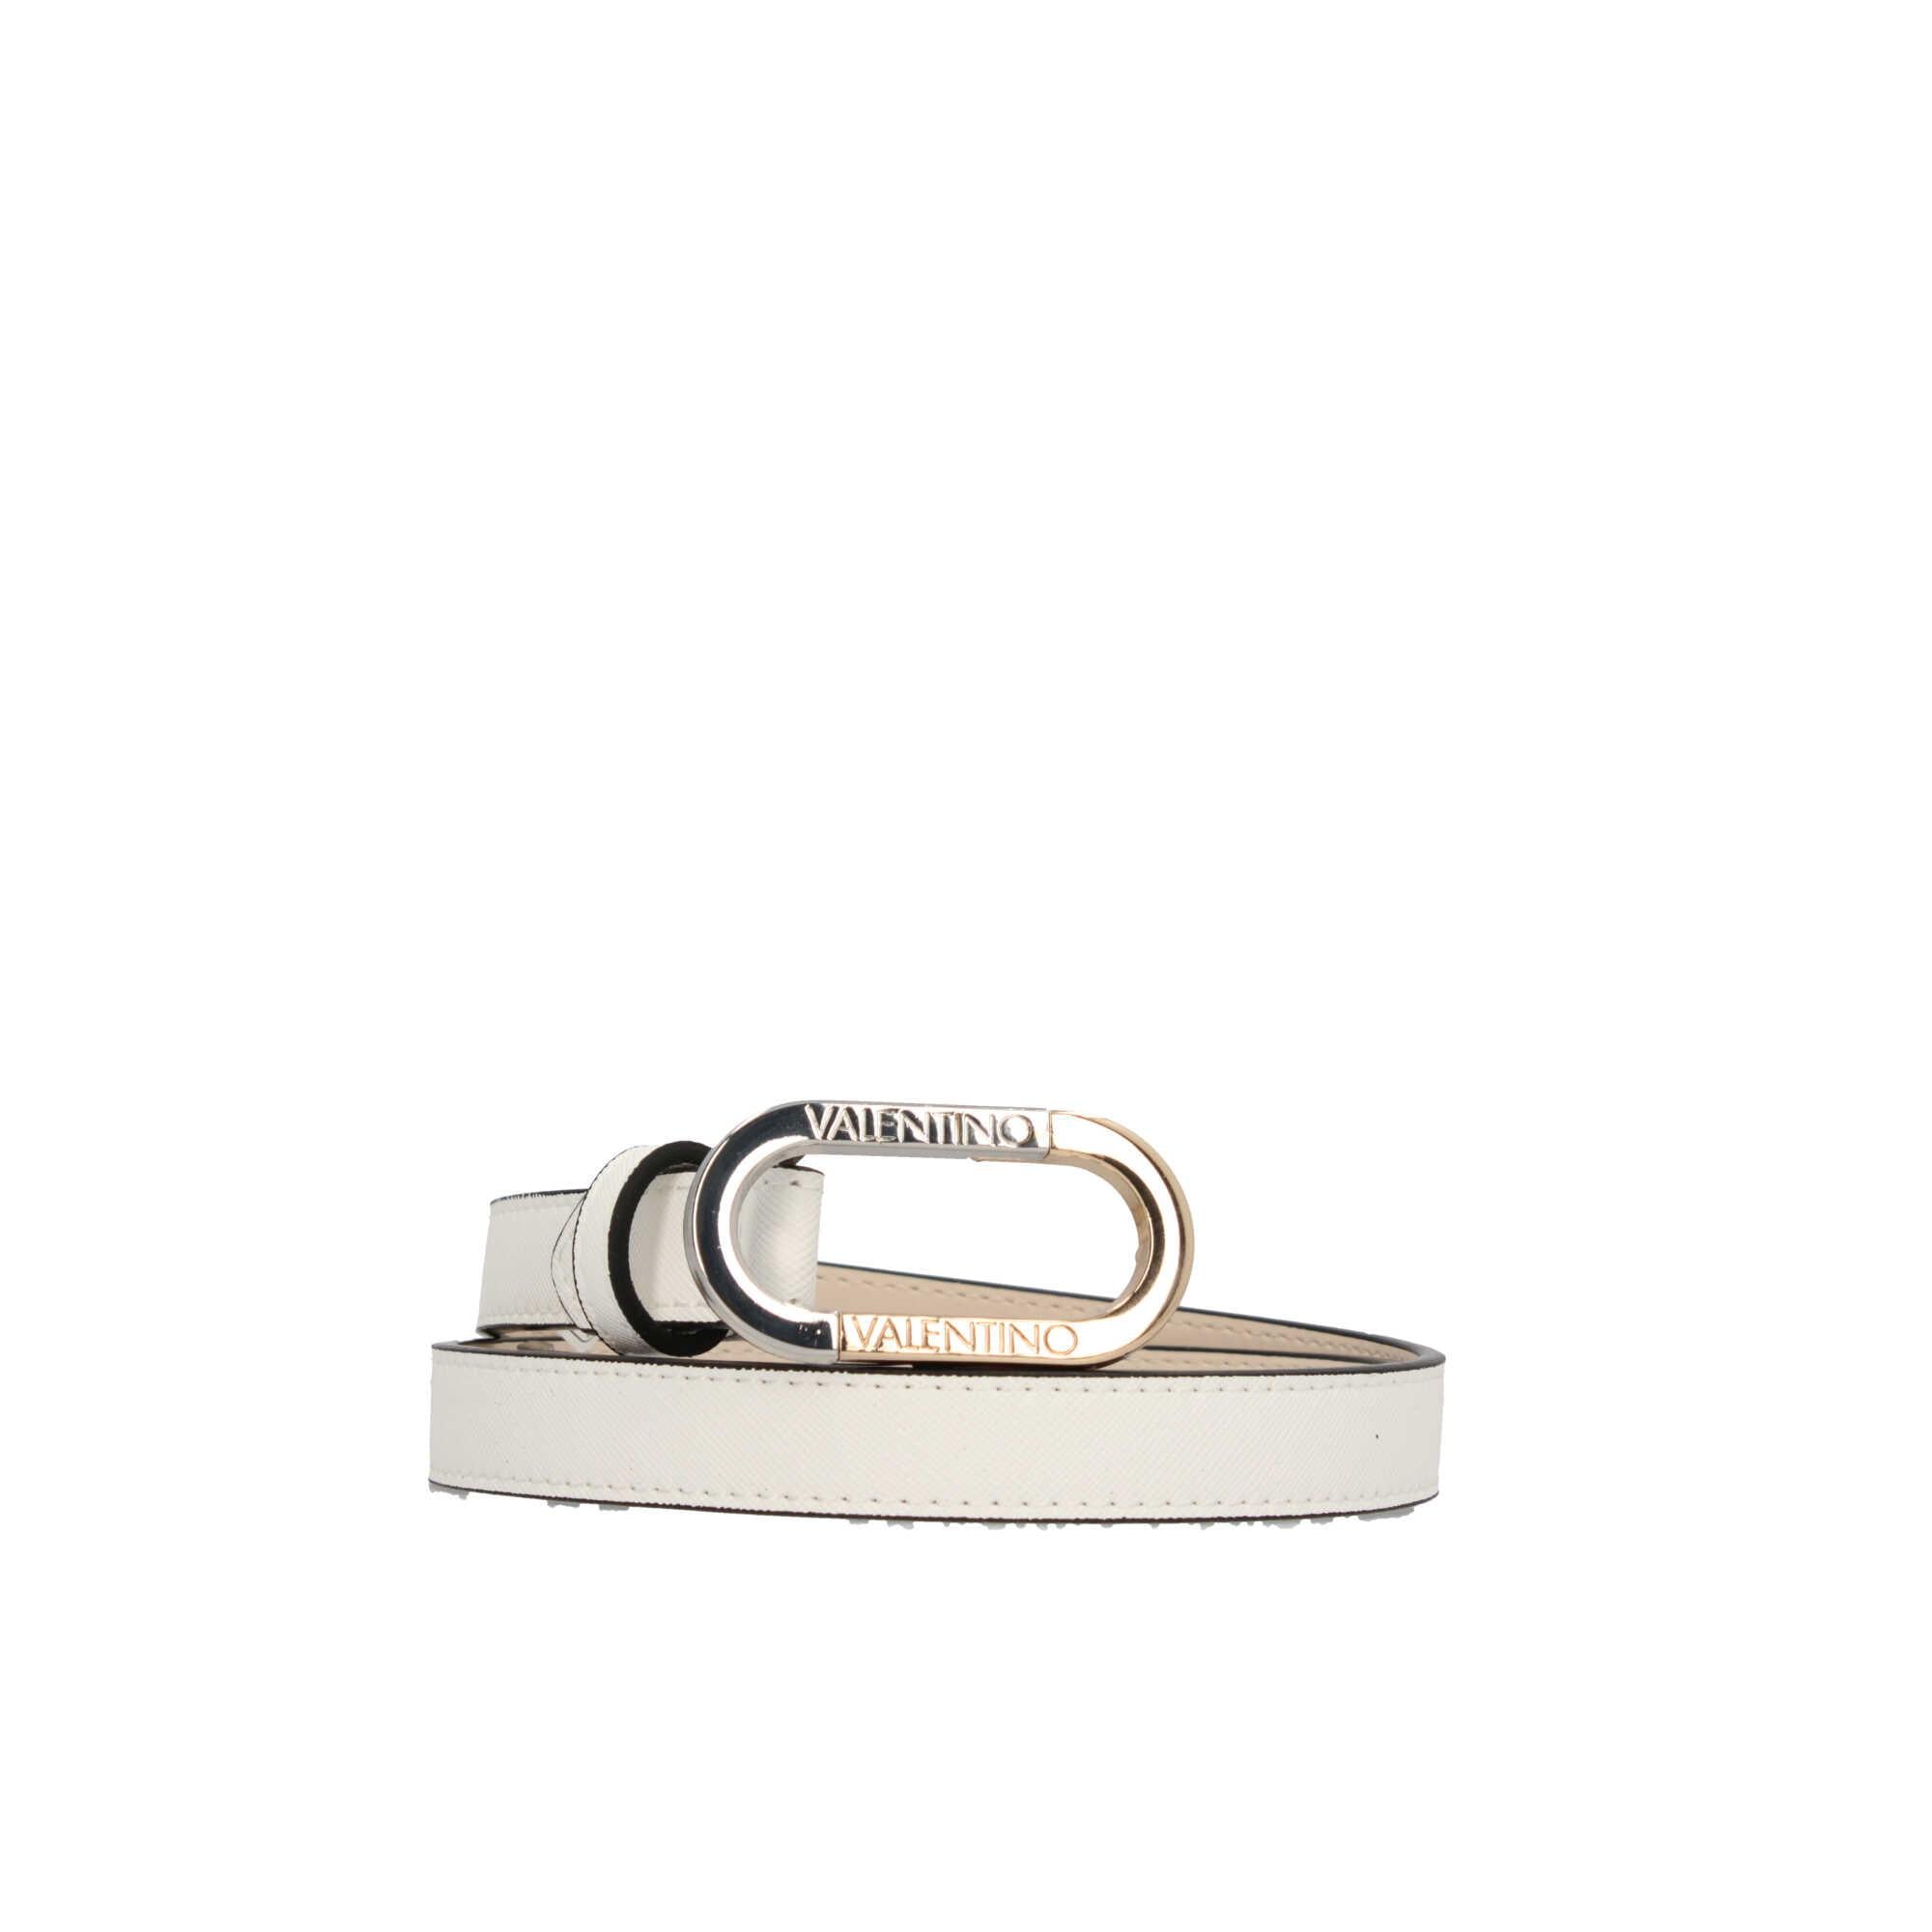 Cintura Valentino in Pelle Metallizzata con Fibbia Tonda